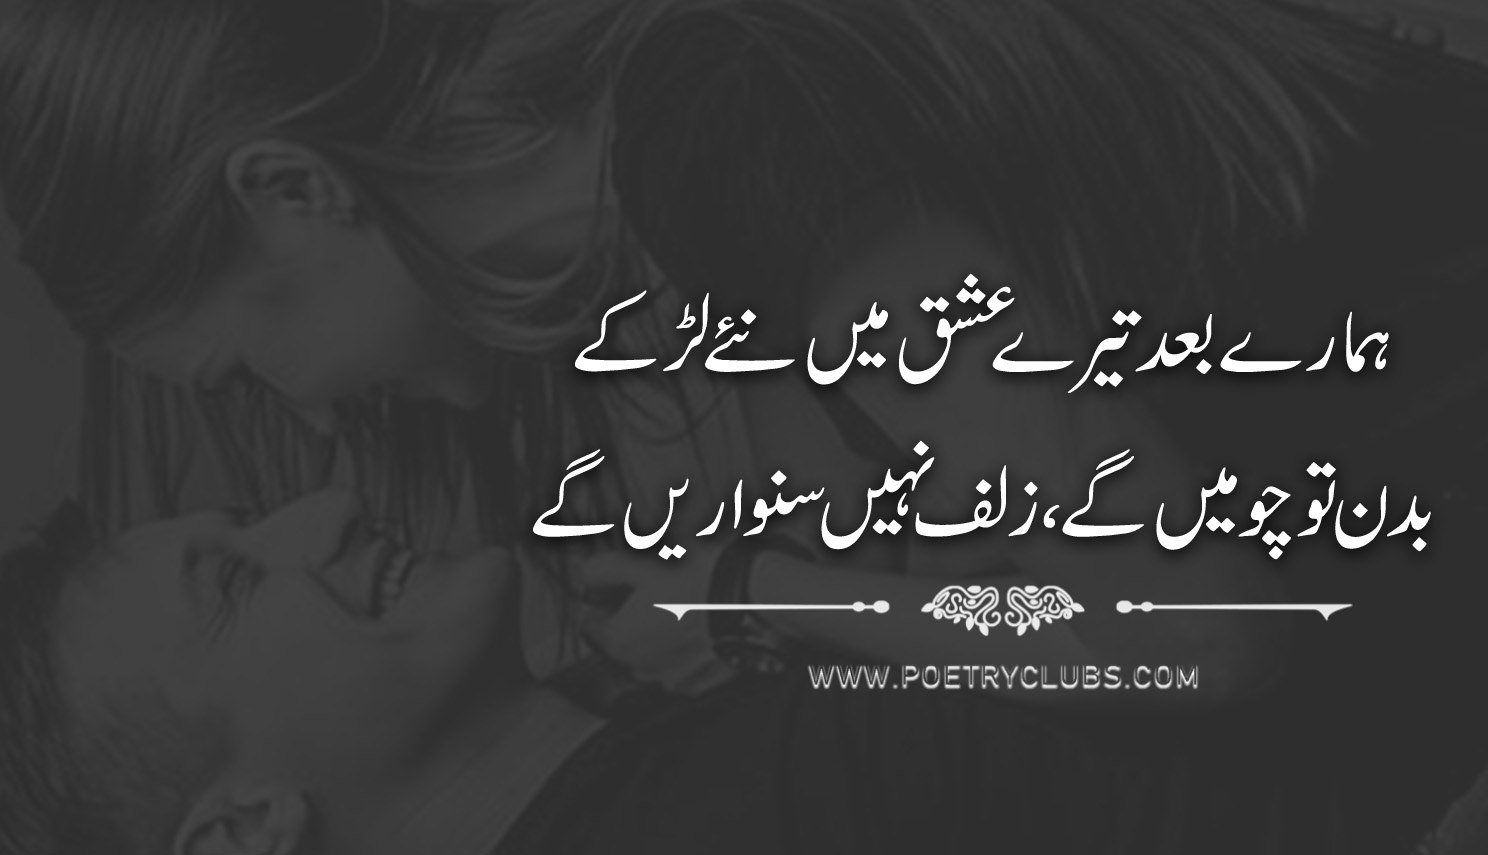 Urdu Poetry Love Sad Hot Best Romantic Poetry Shayari Poetry Club.